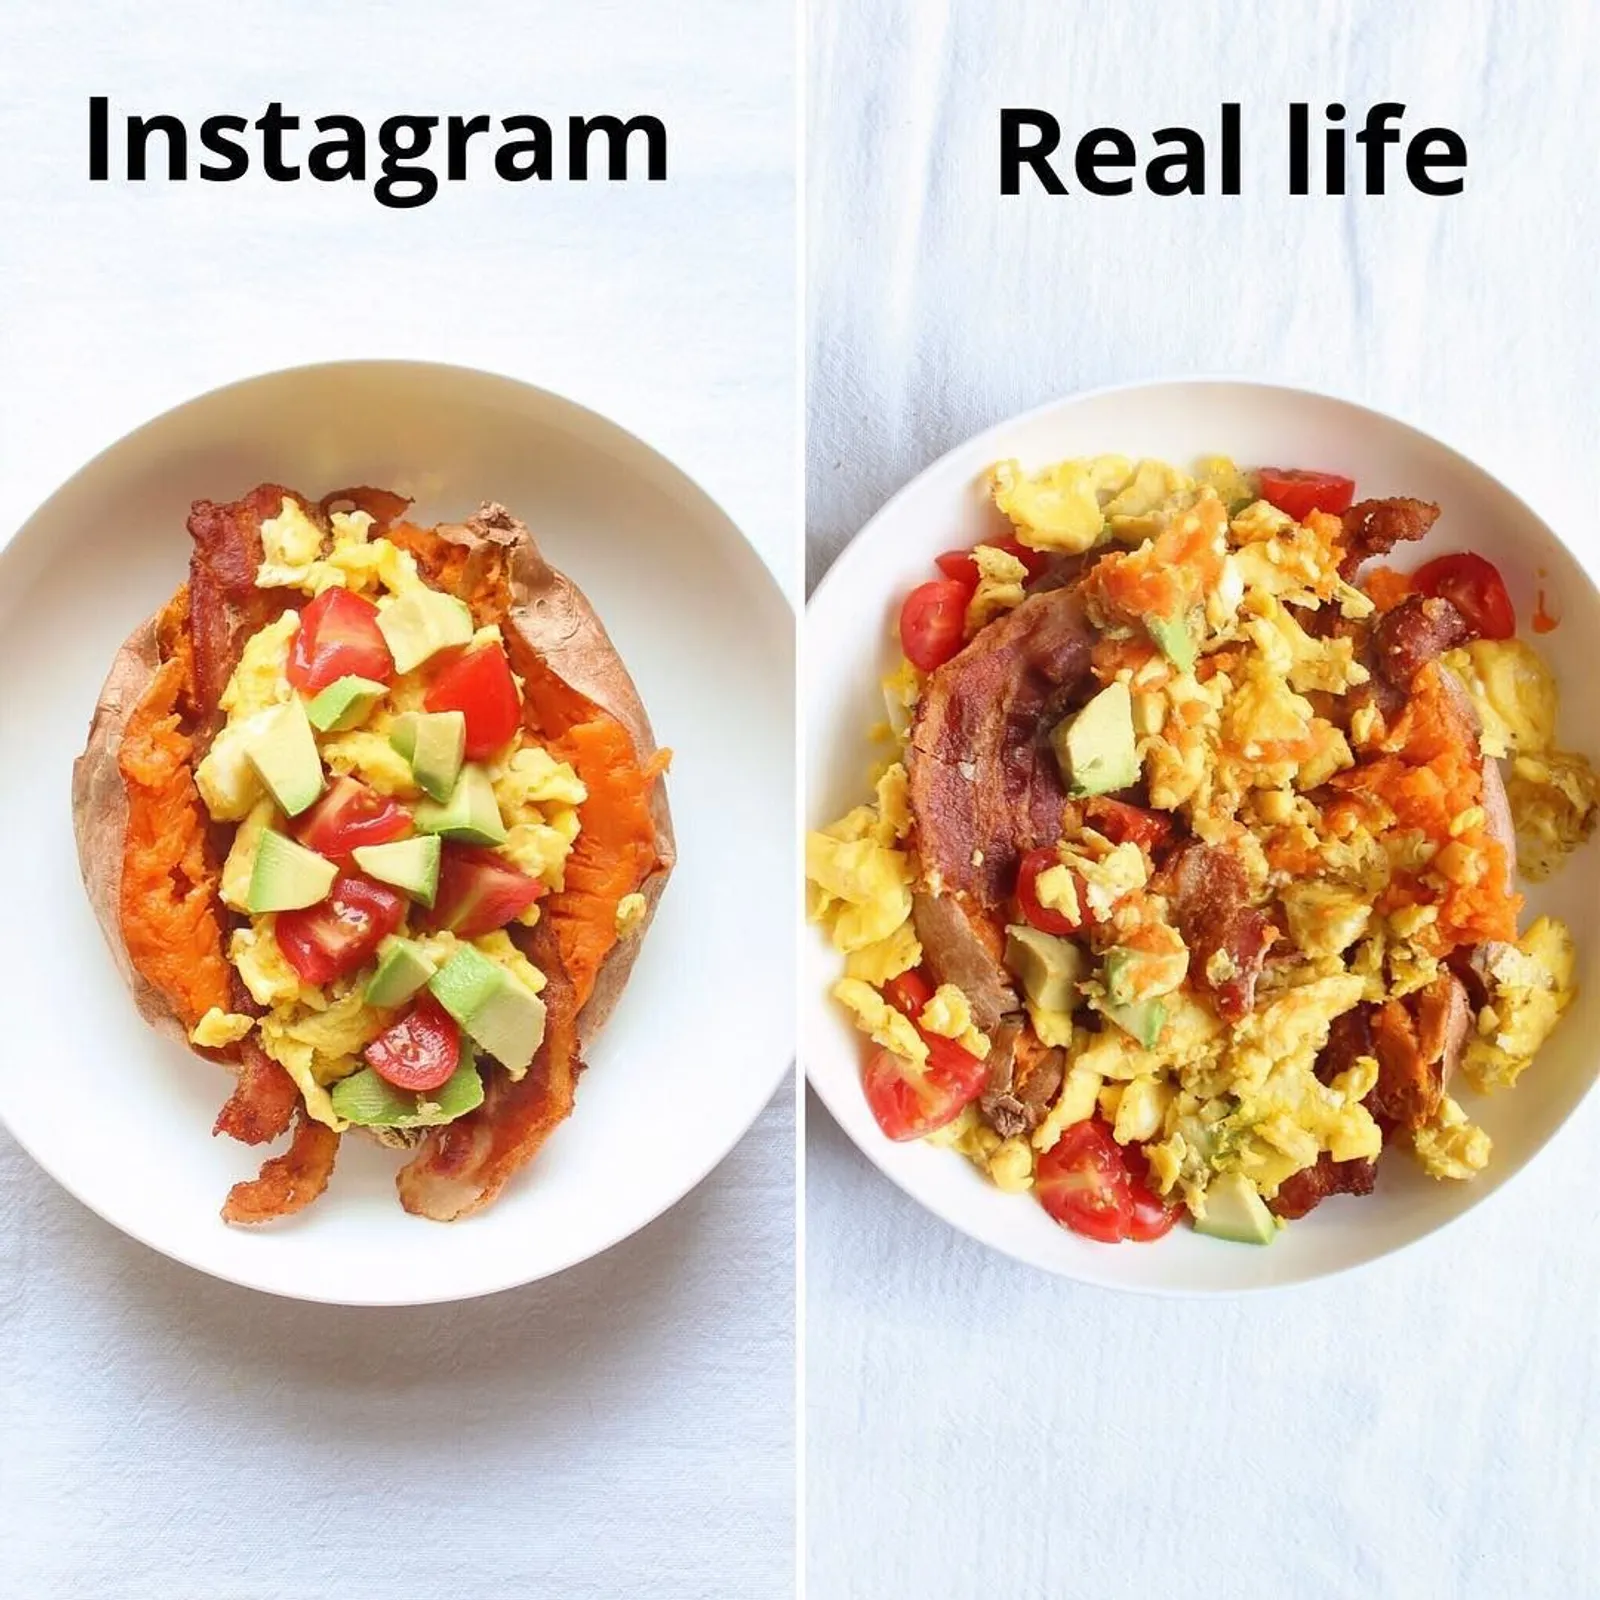 Nggak Semenarik di Instagram, Ini Tampilan Asli Makanan Organik